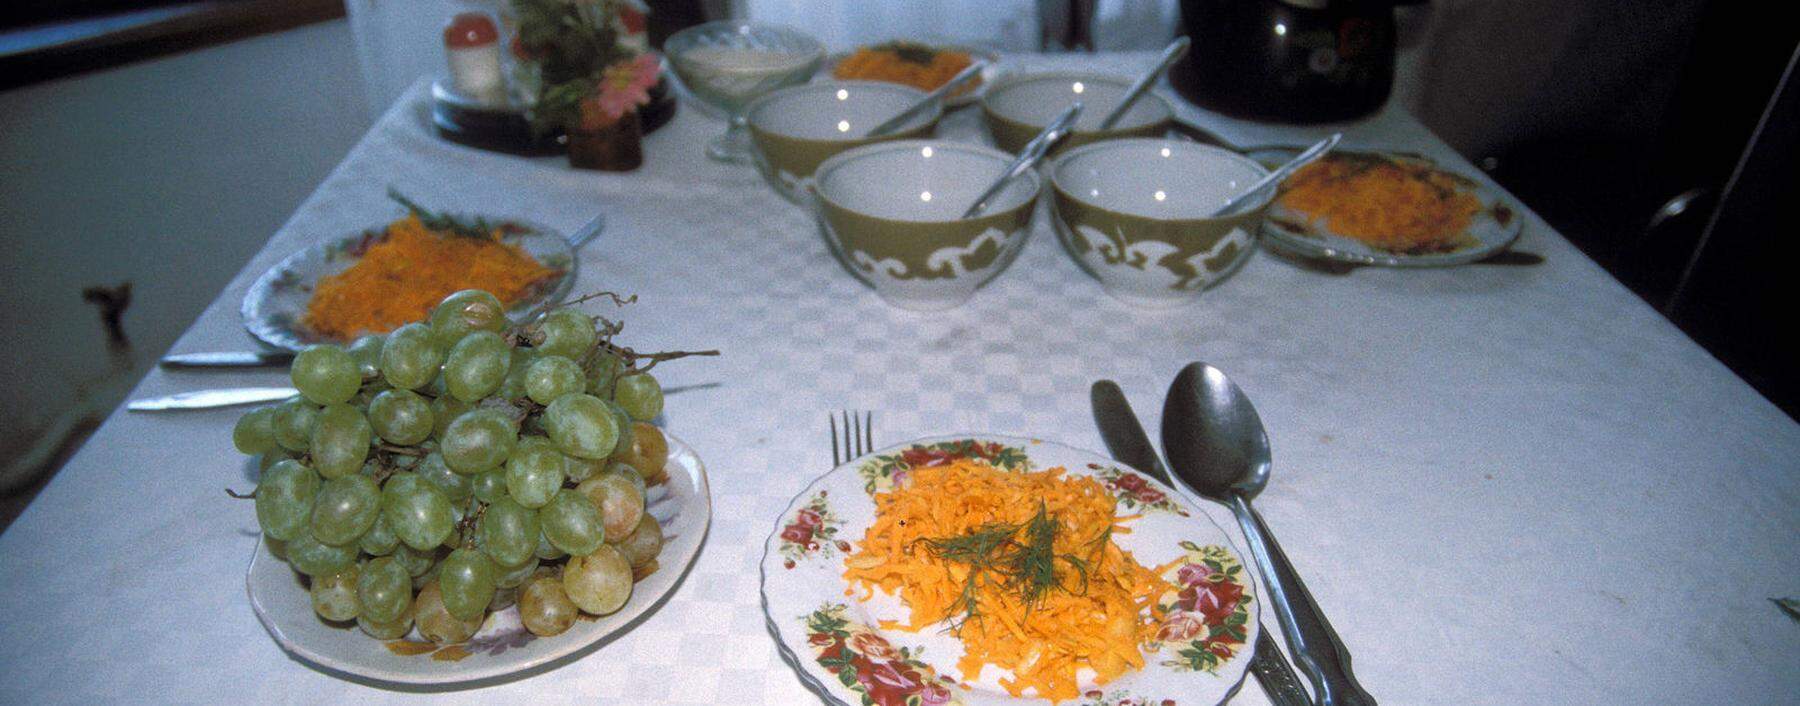 Frühstück in Kasachstan.